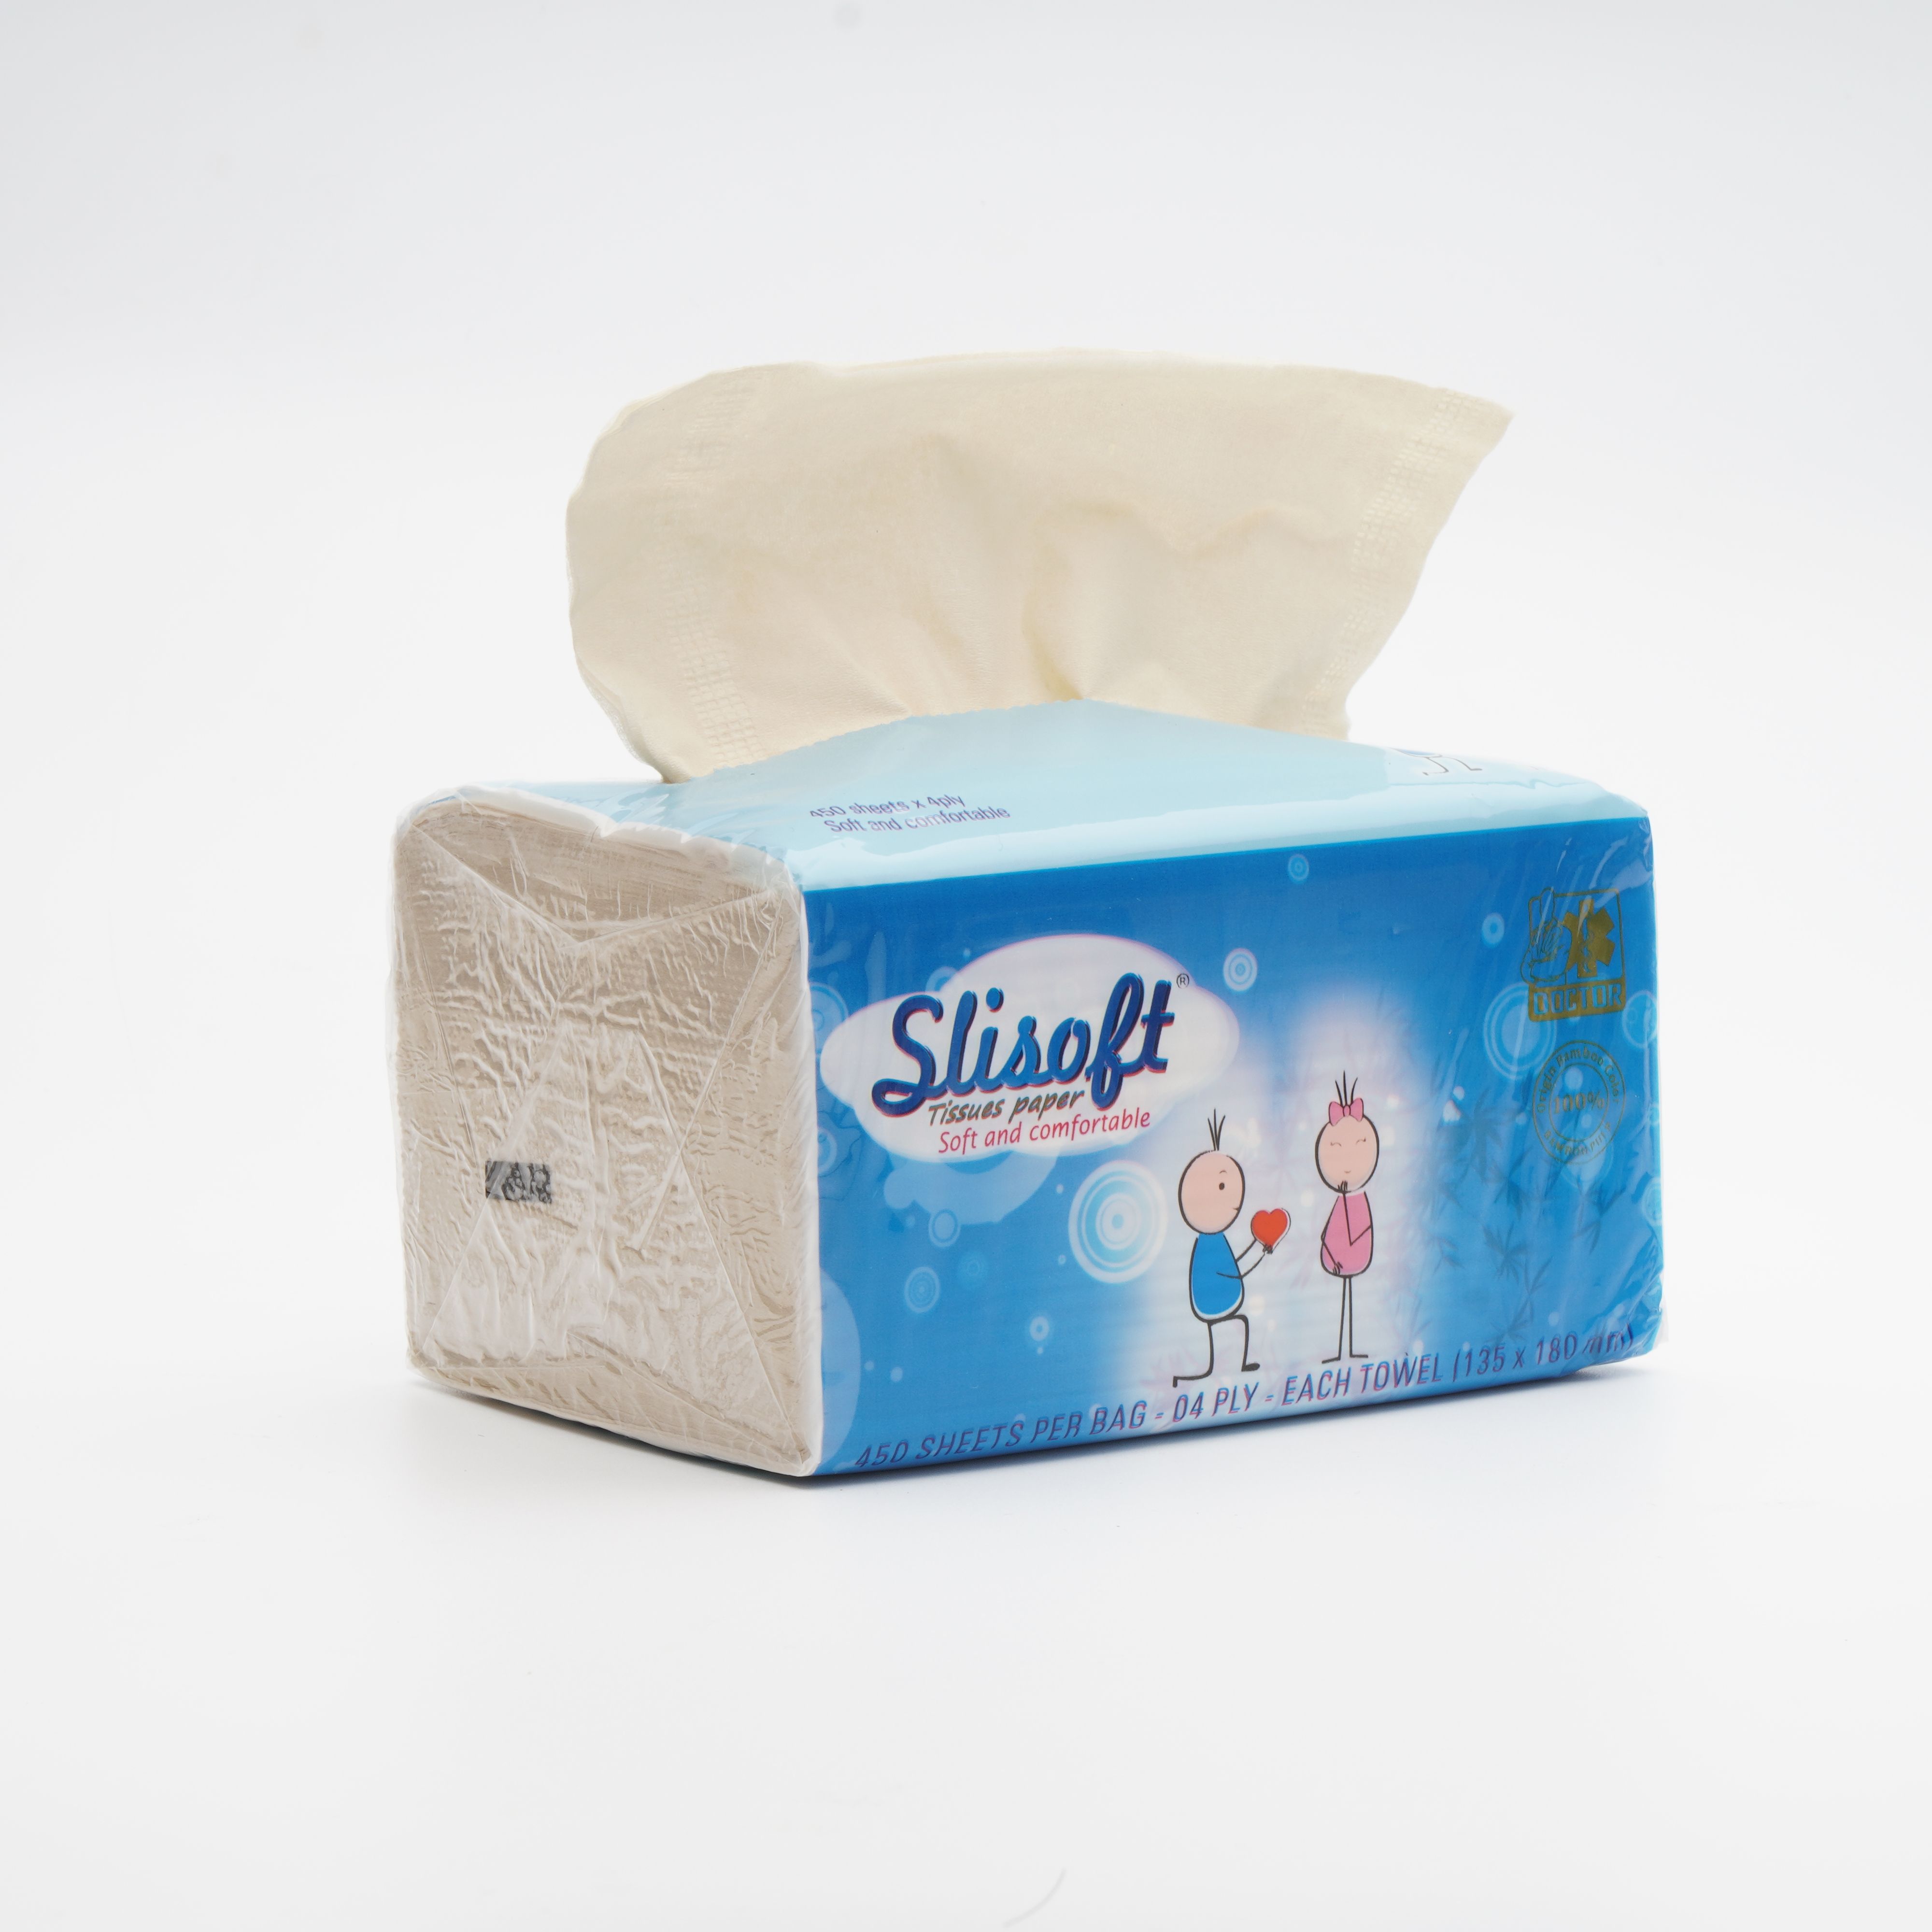 giấy ăn để bàn slisoft 4 lớp đa năng thân thiện môi trường không chất tẩy 8